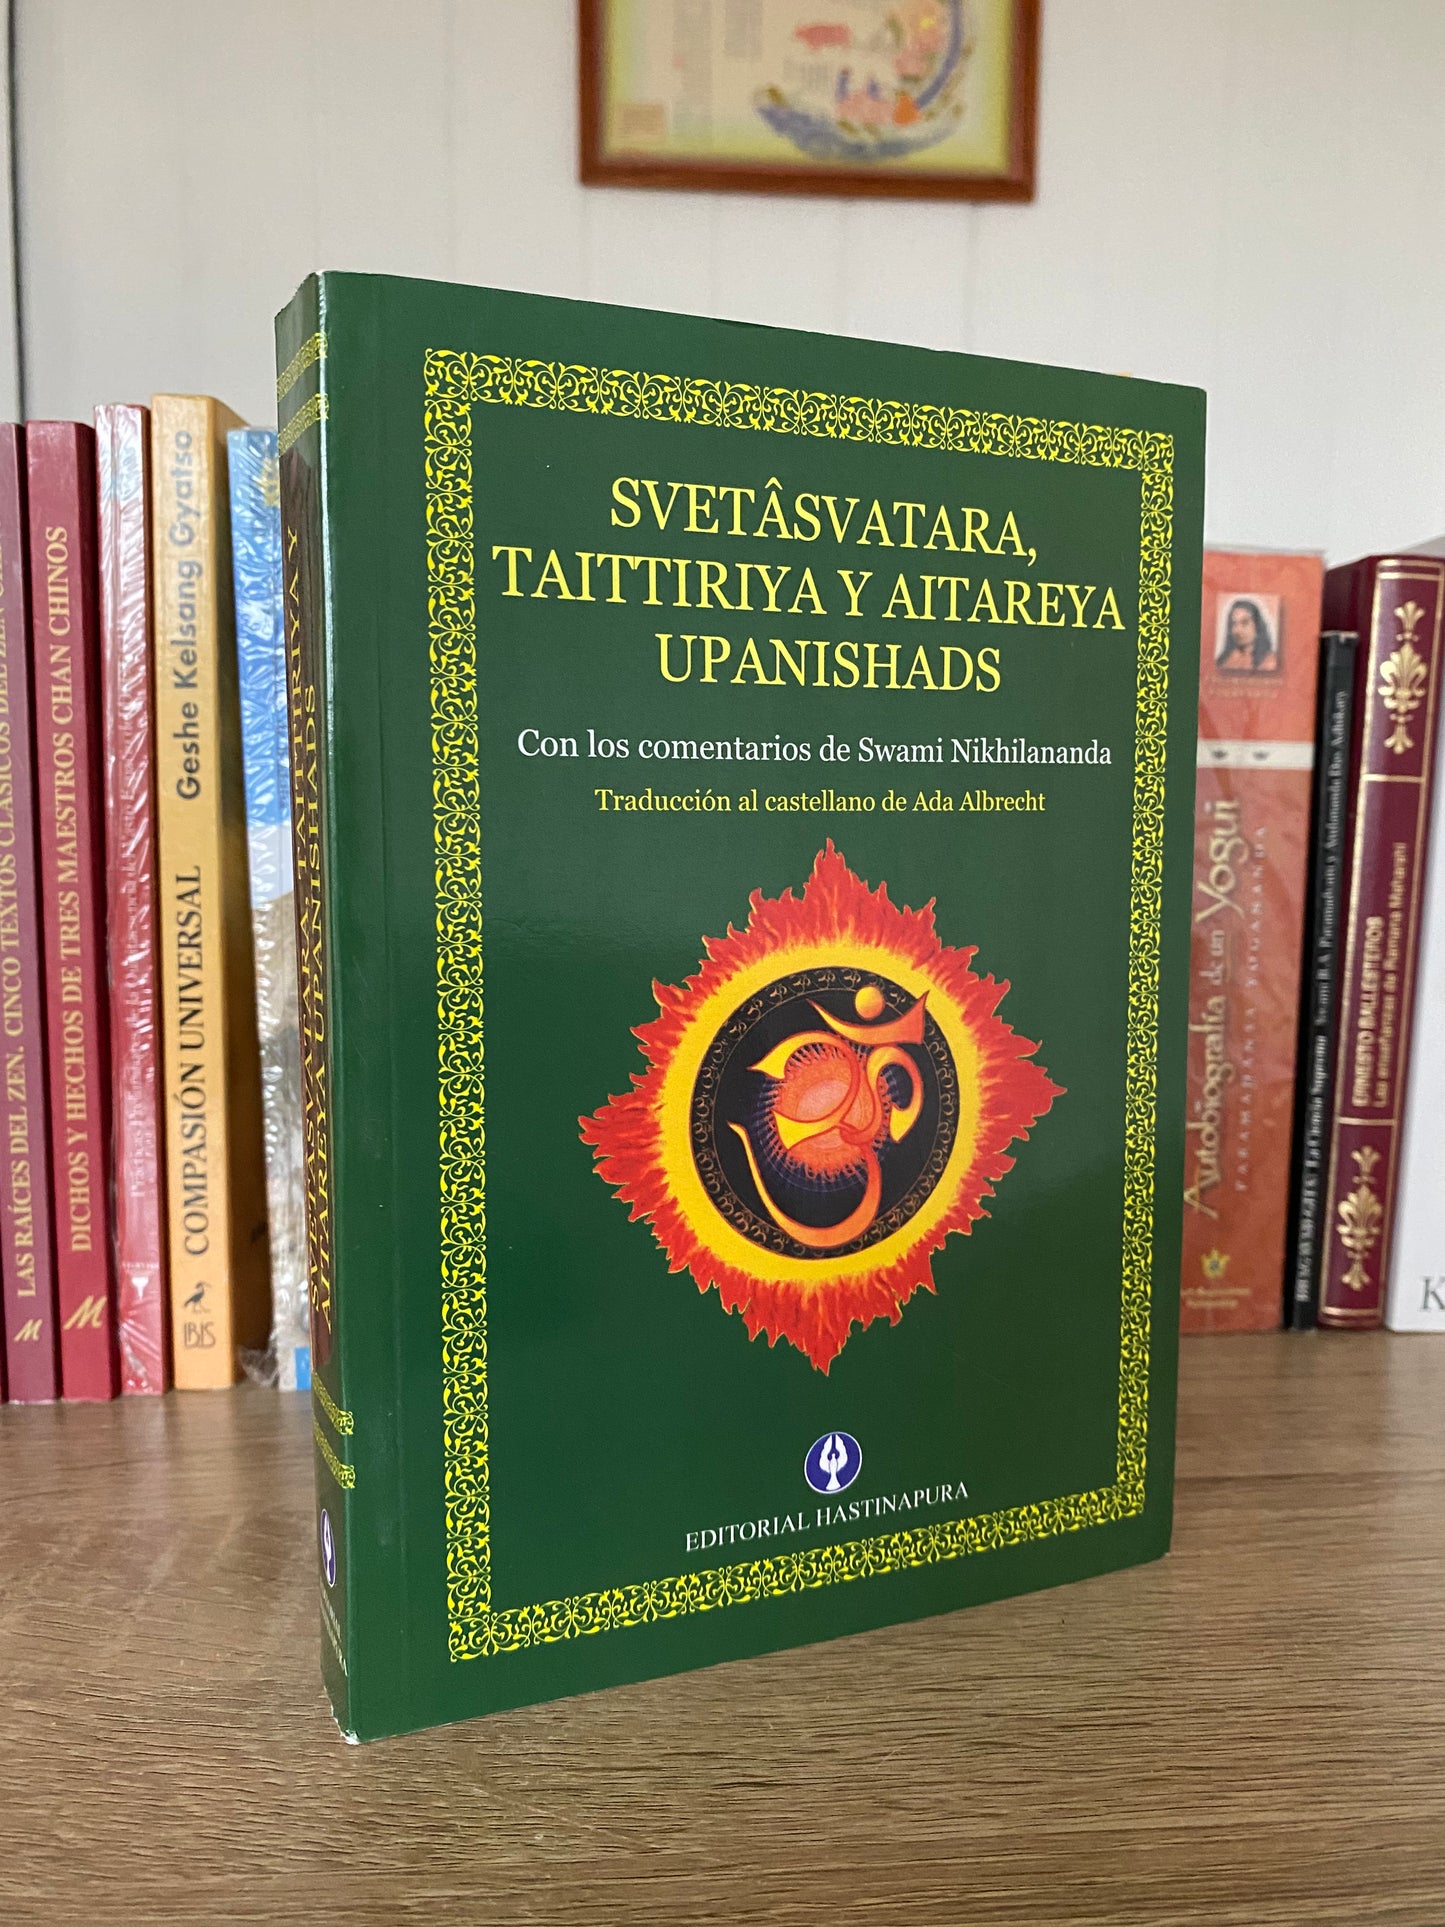 Colección 5 tomos, 11 Upanishads Mayores